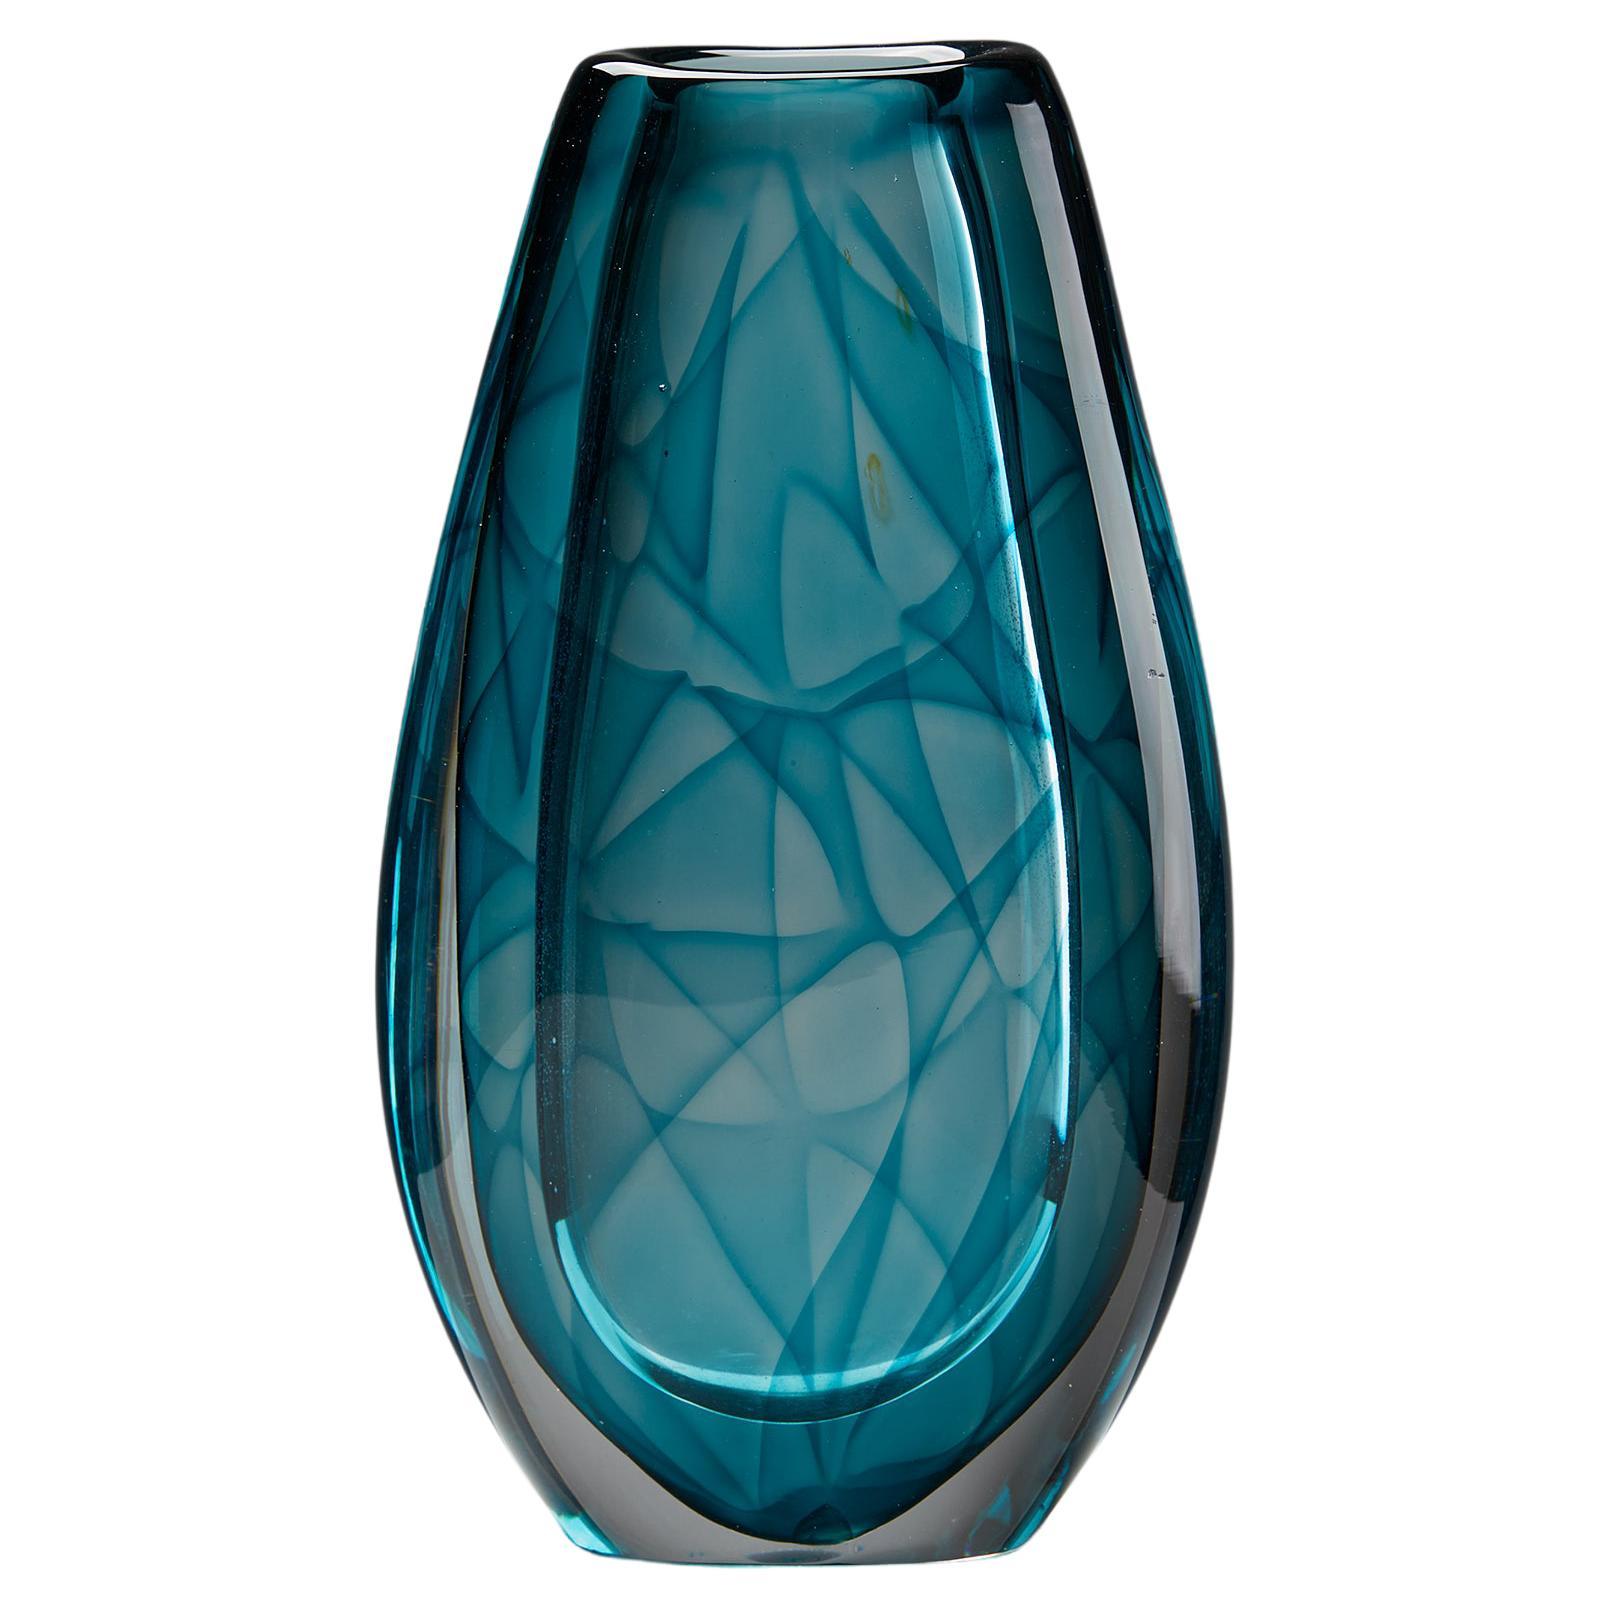 Vase ‘Colora’ Designed by Vicke Lindstrand, for Kosta, Sweden, 1950’s